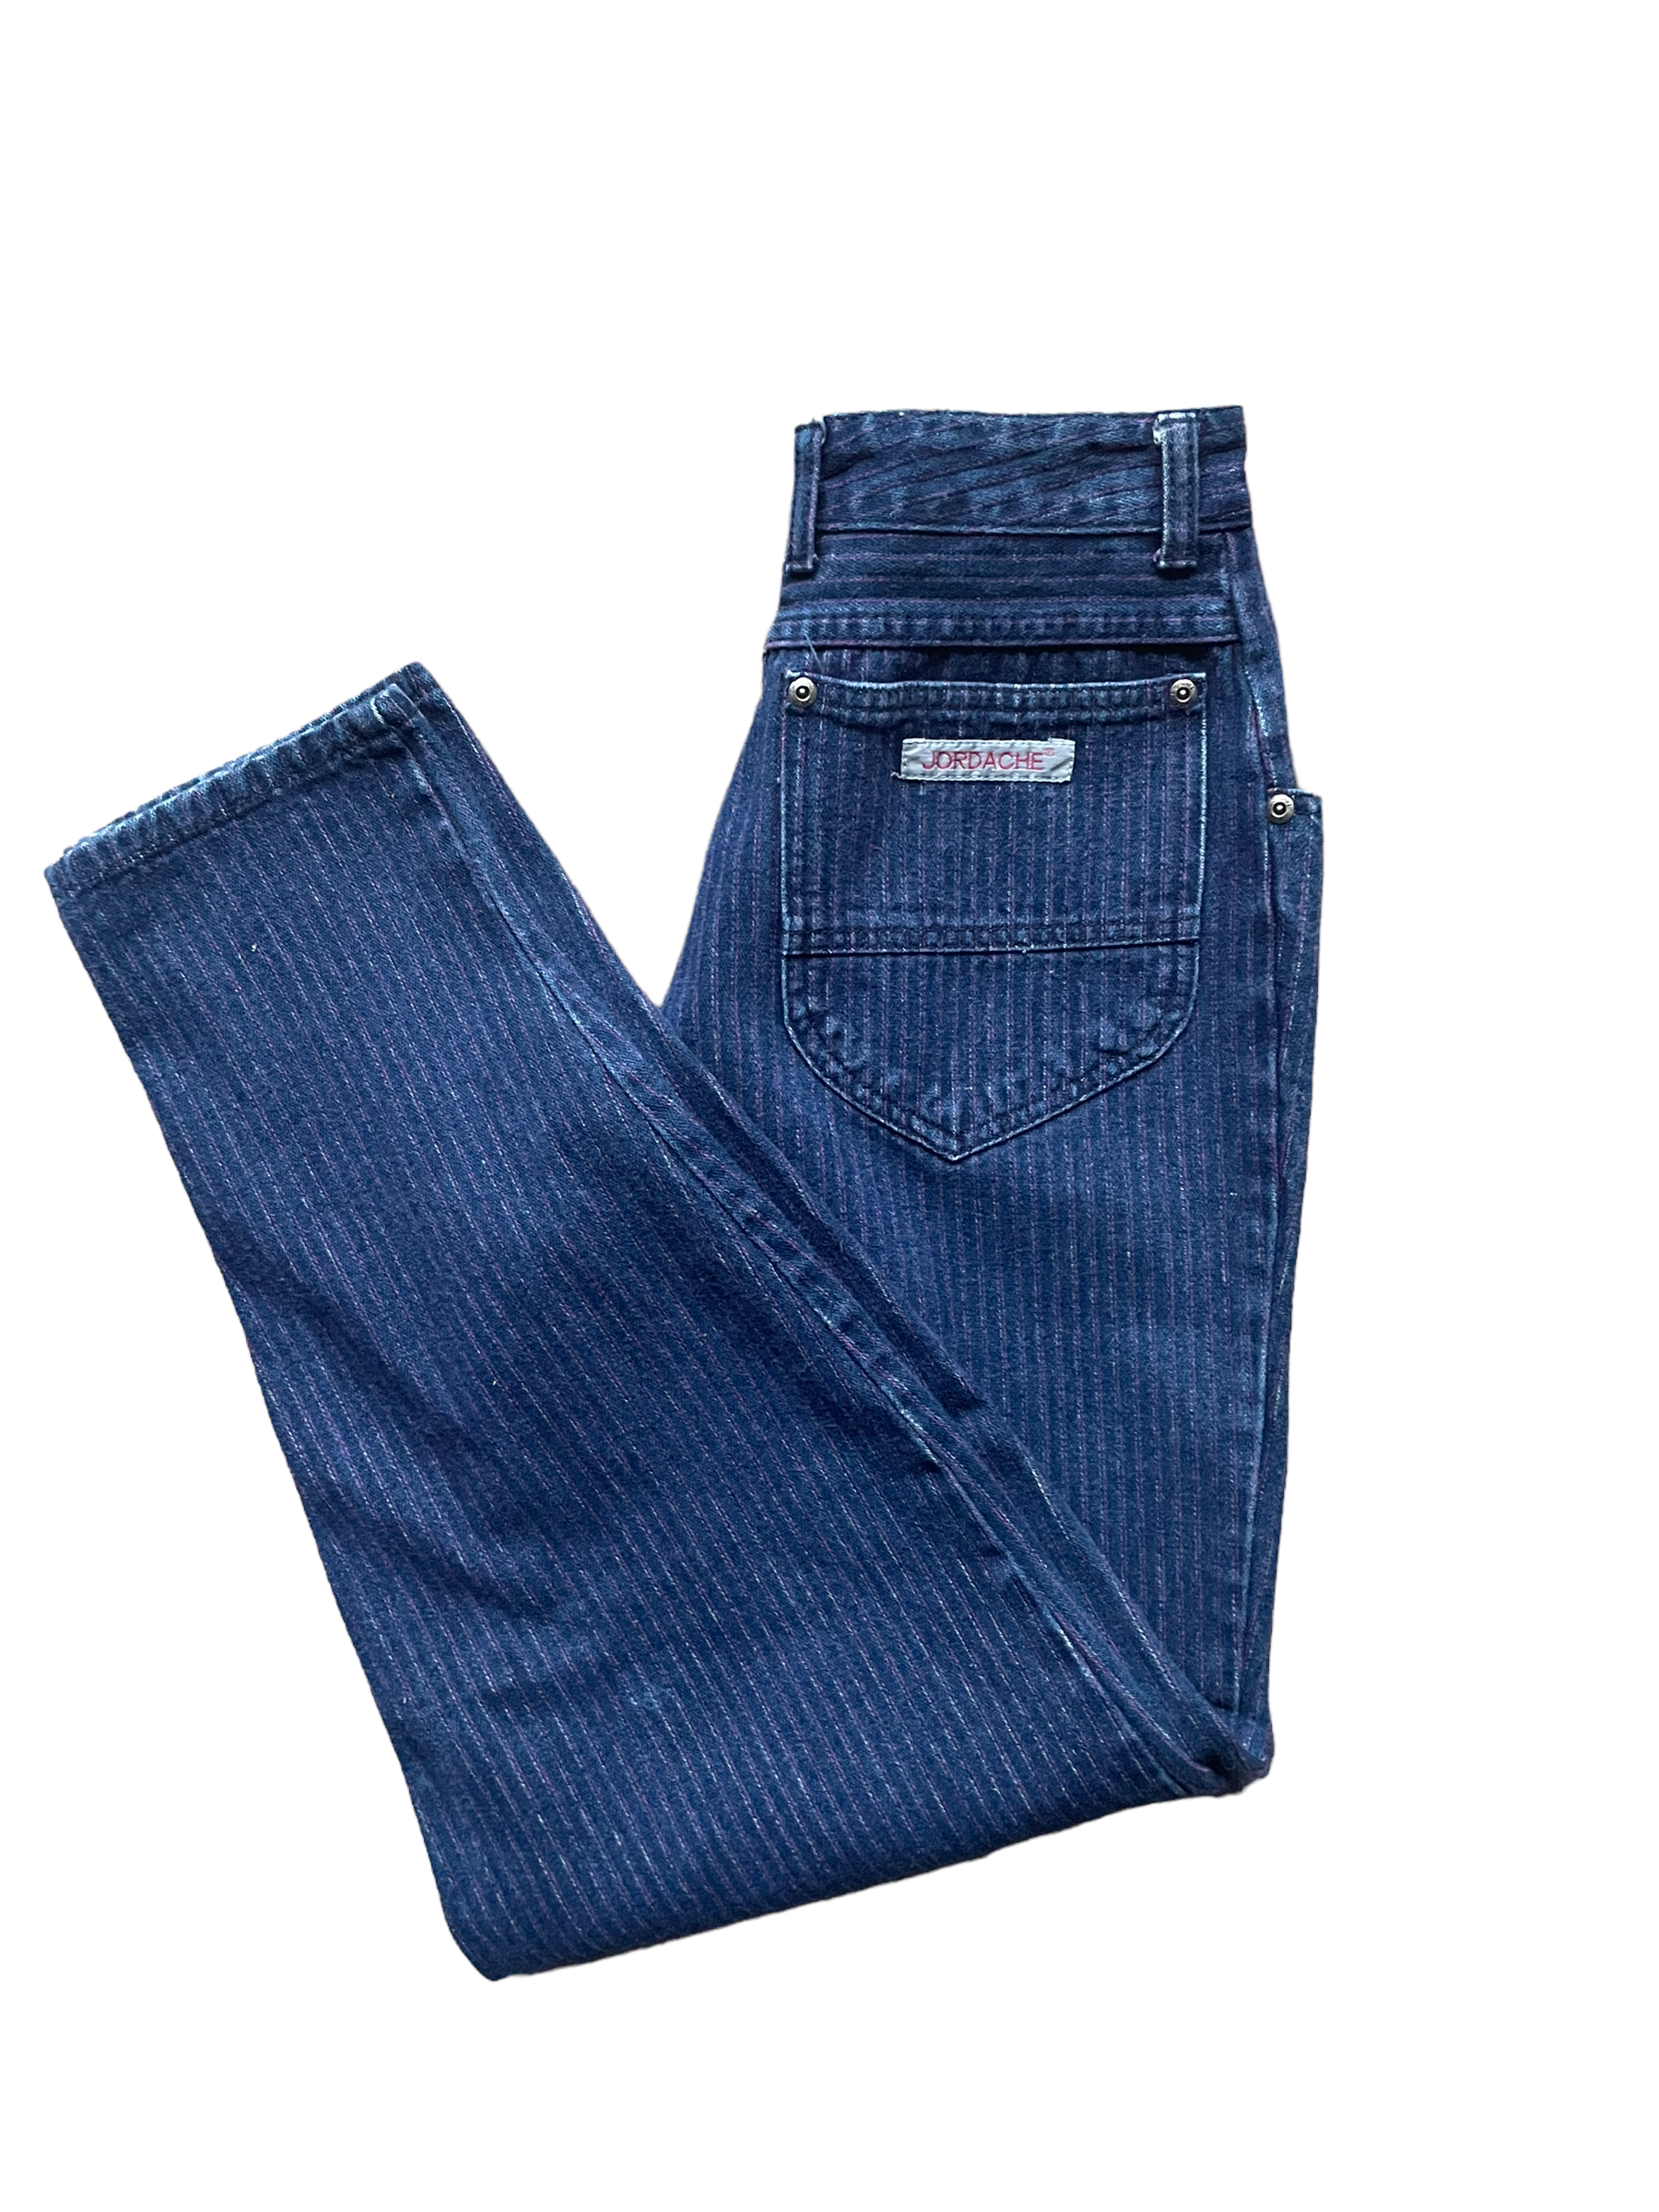 Folded view of Vintage 1980s Ladies Purple Pinstripe Jordache Jeans | Barn Owl Seattle | Vintage Ladies Jeans and Denim